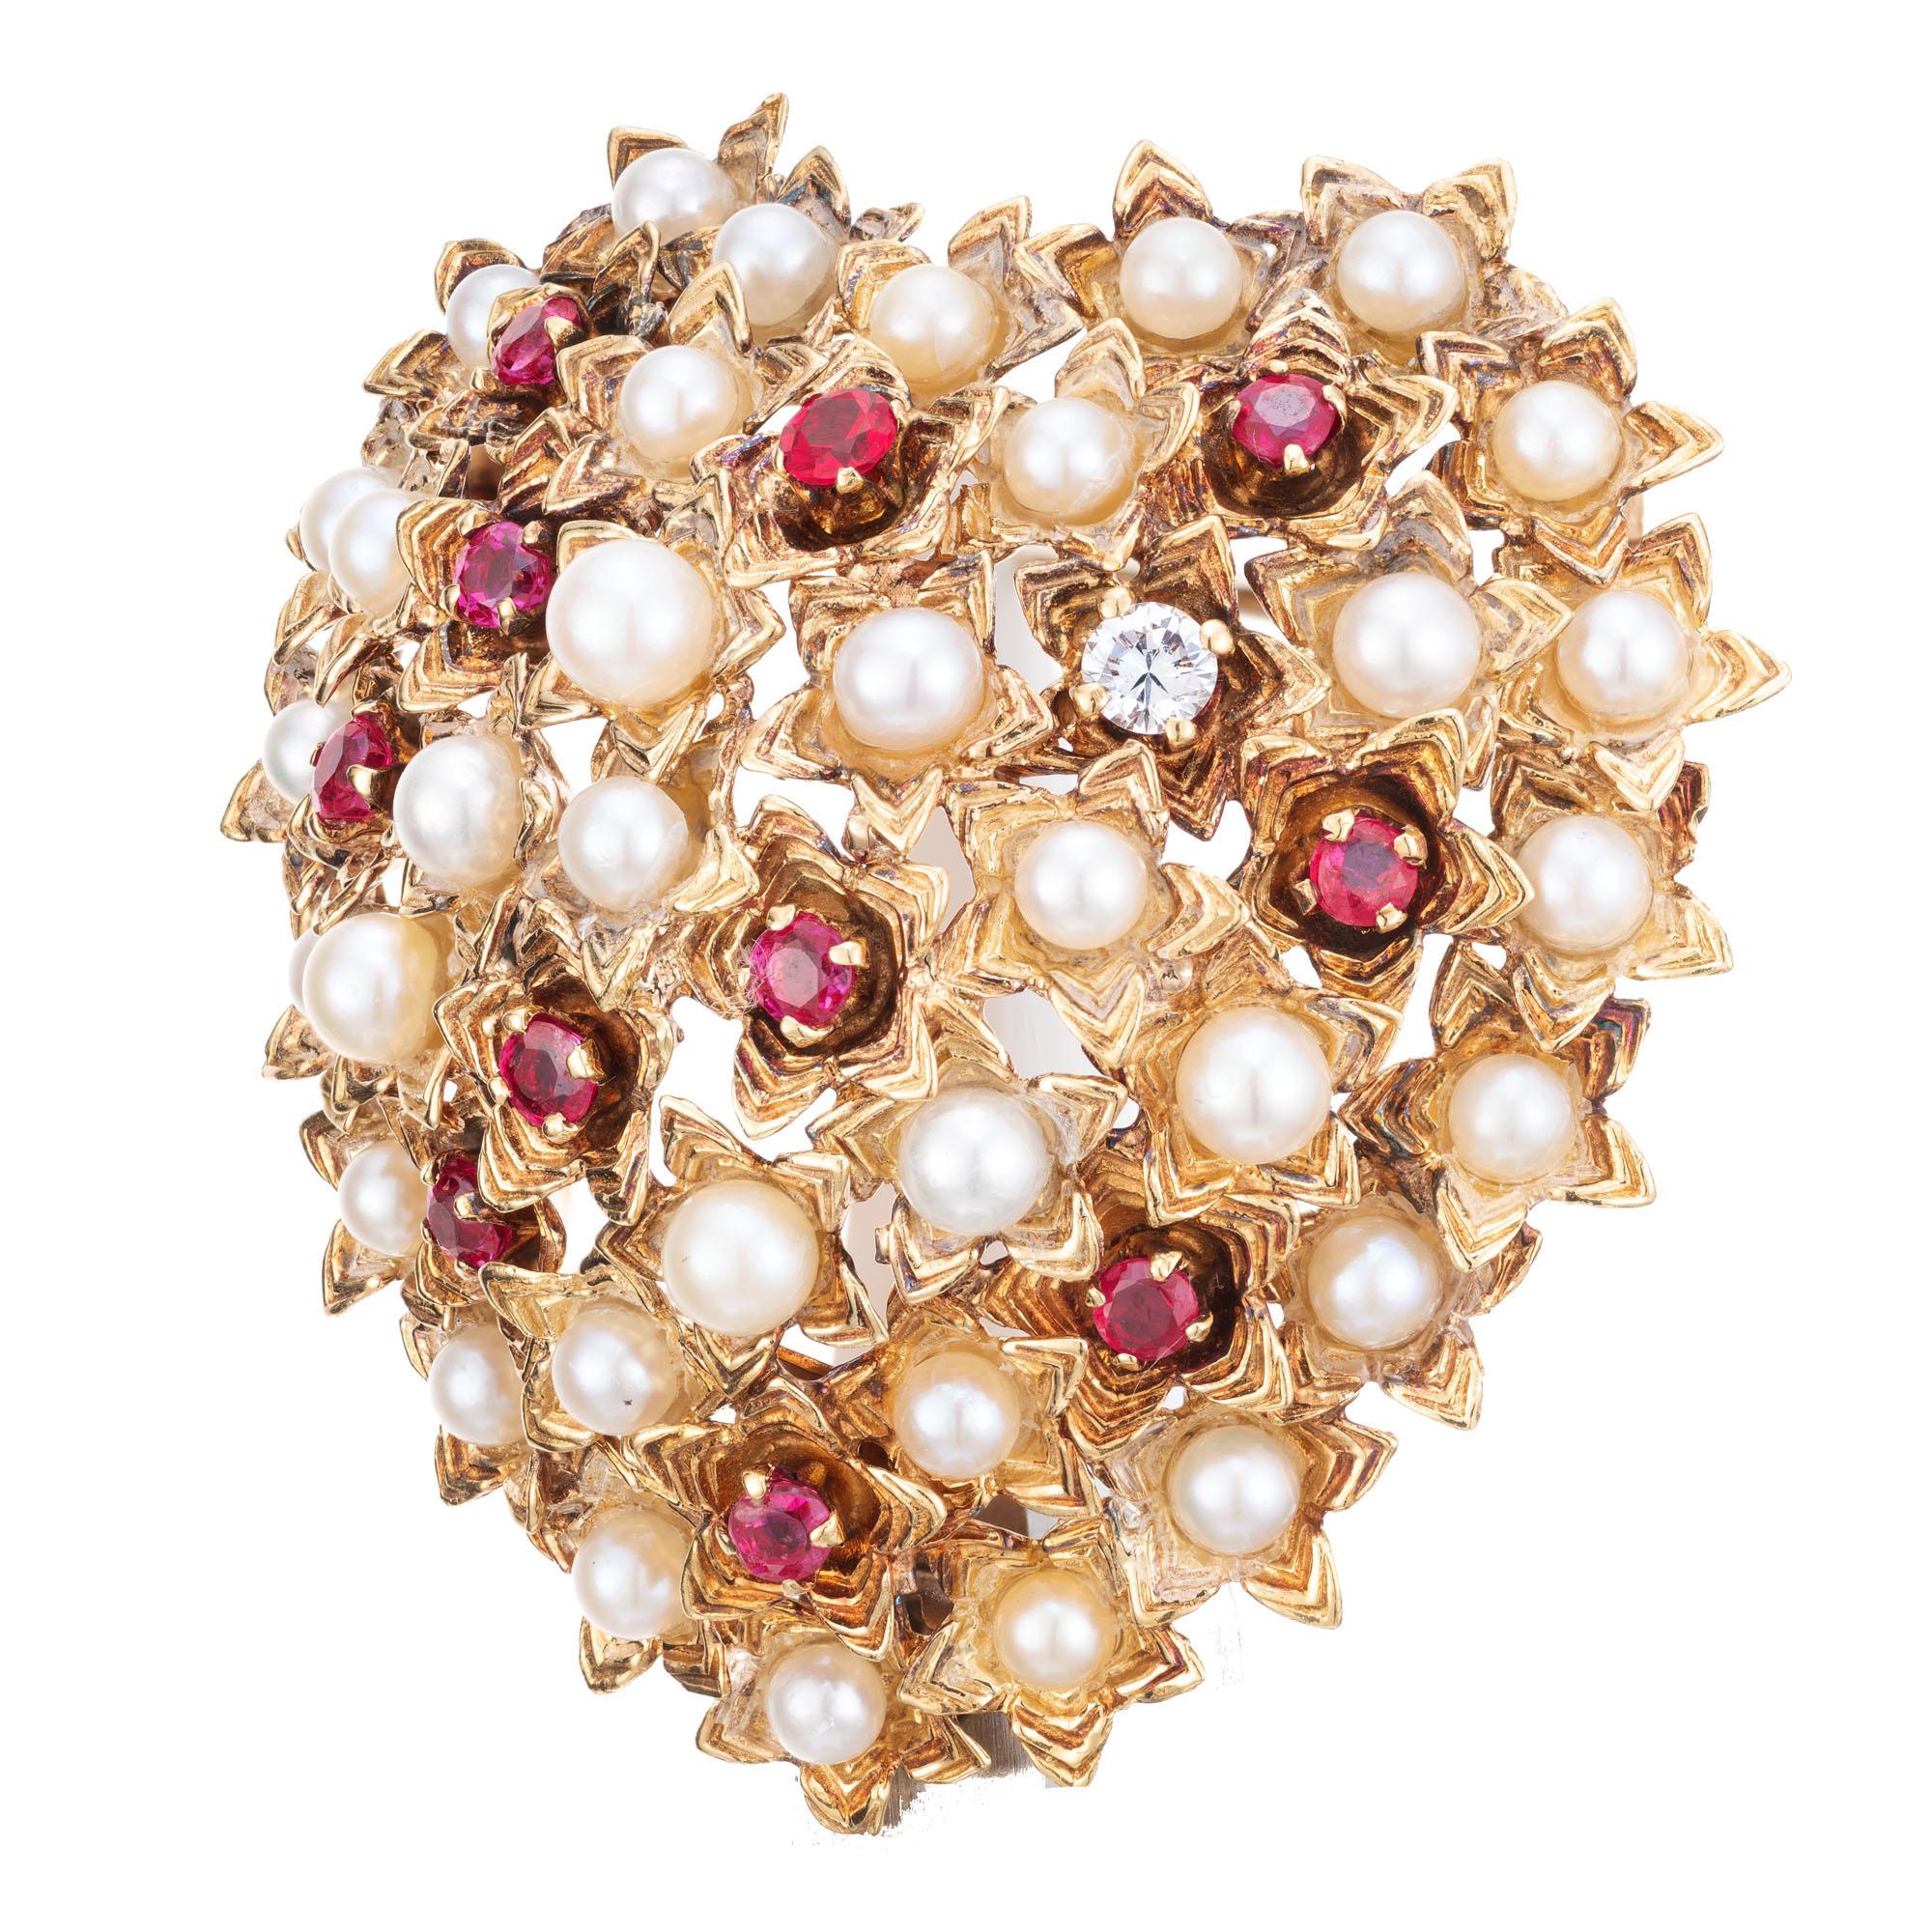 1950's Authentic Tiffany + Co, Rubin, Diamant und Akoya-Perlen in 18k Gelbgold, Italienisch gemacht gewölbten herzförmigen Brosche gesetzt.  

1 runder Diamant mit einem Gewicht von ca. 0,07cts. 
11 runde Rubine mit einem Gesamtgewicht von ca.